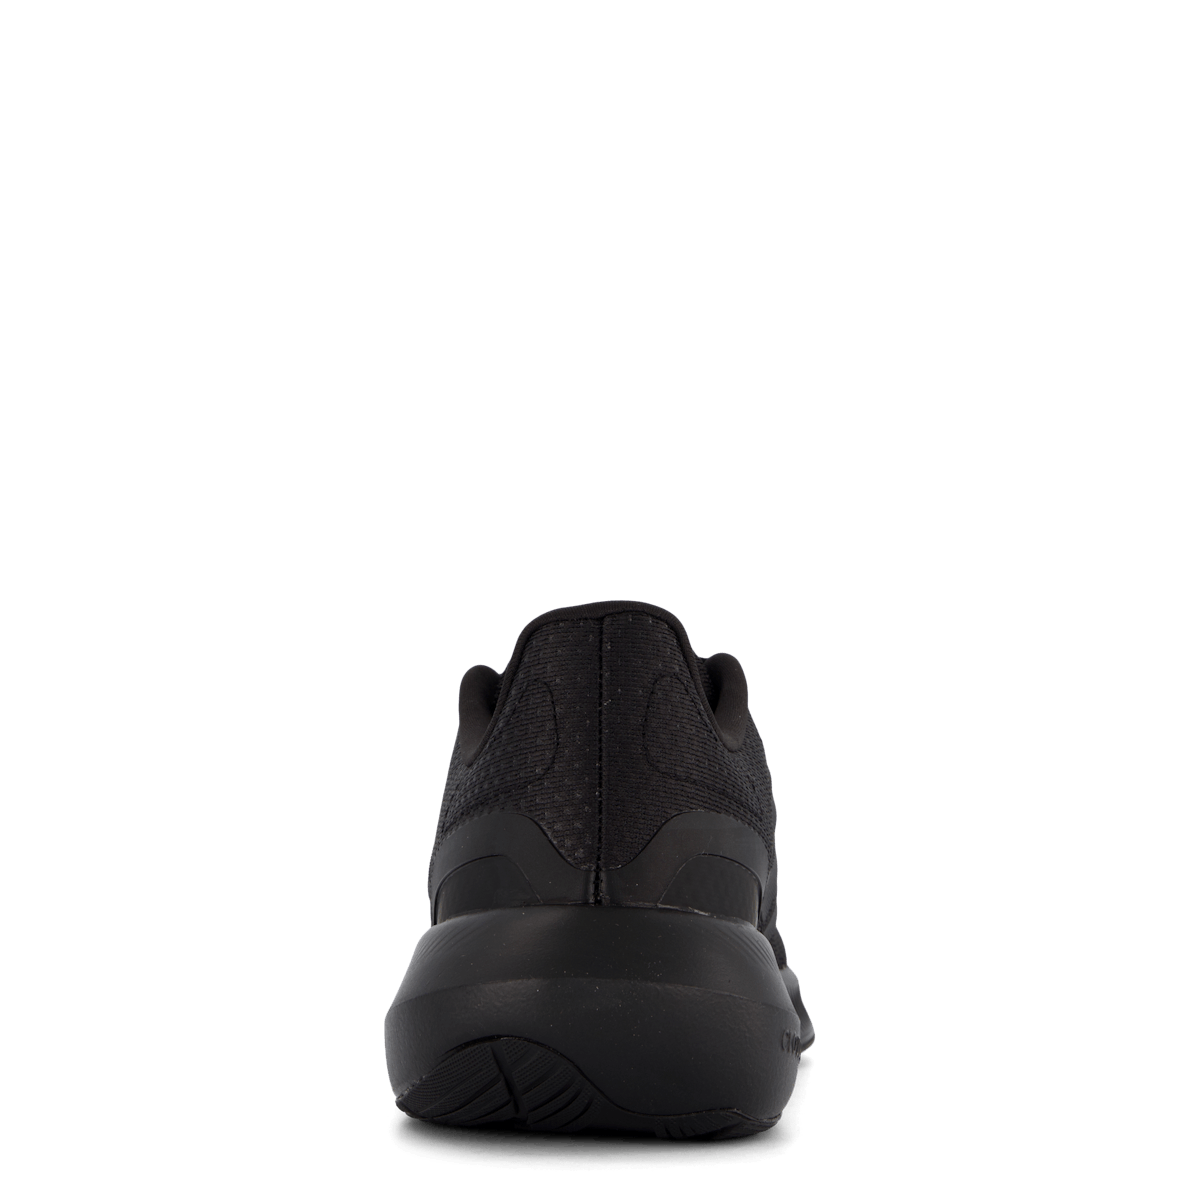 Runfalcon 3.0 Shoes Core Black / Core Black / Carbon